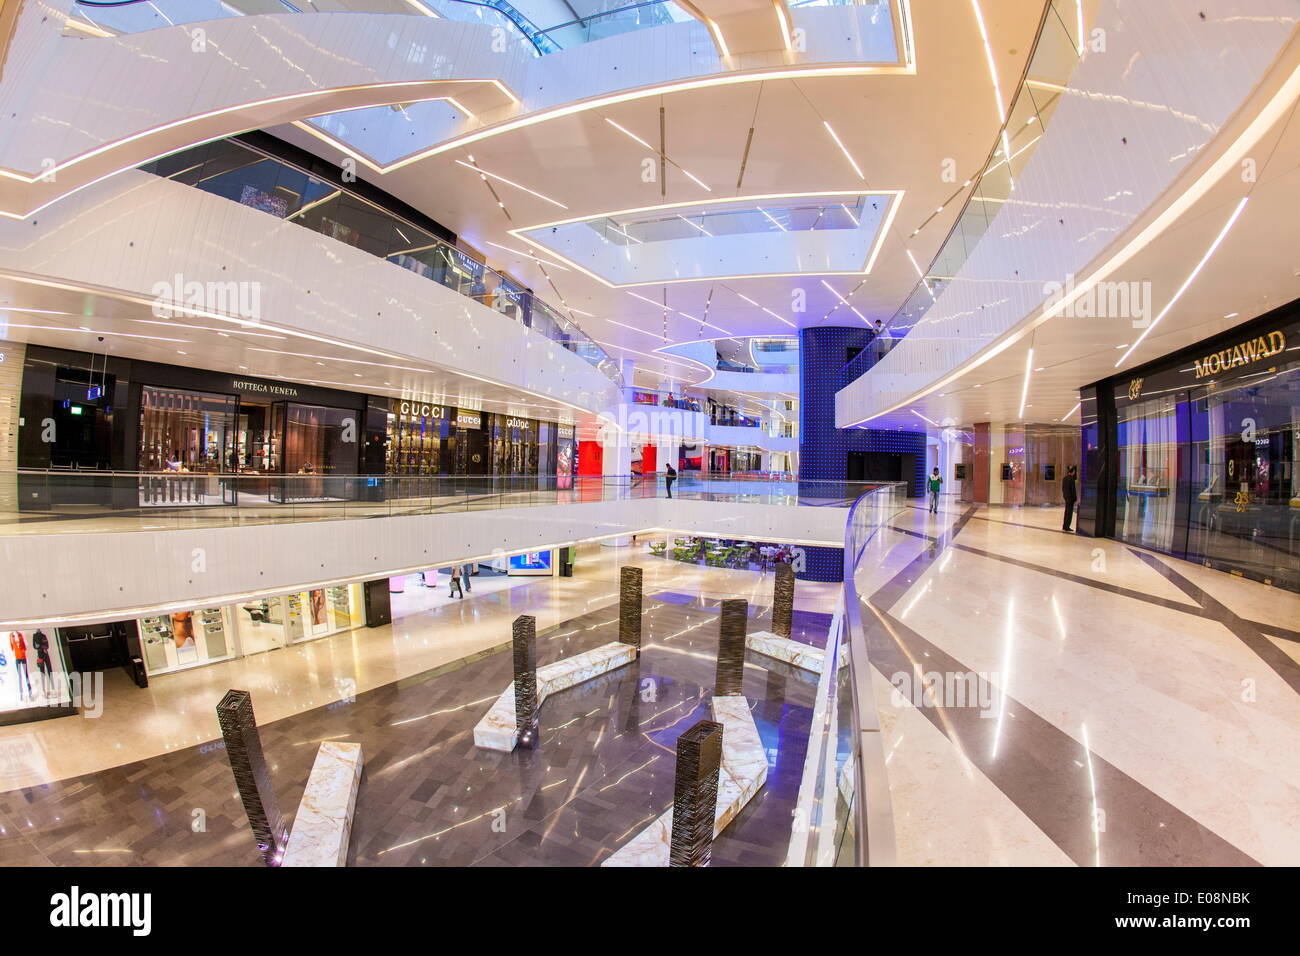 Al Hamra Tower, terminée en 2011 comprend un centre commercial et d'affaires de luxe, de la ville de Koweït, Koweït, Moyen-Orient Banque D'Images